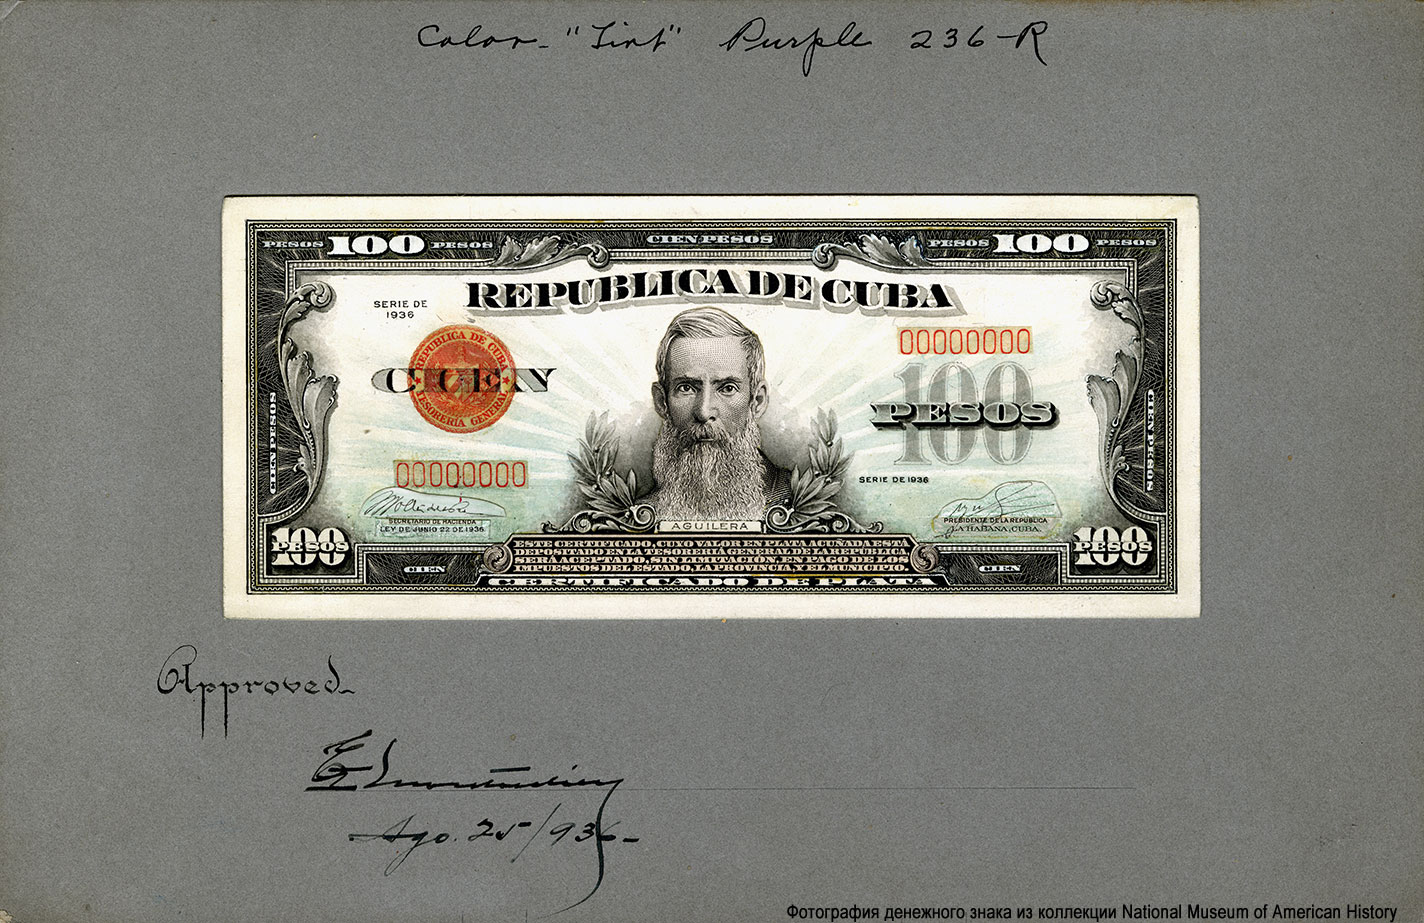 República de Cuba 100 Pesos. Progress Proofs of BEP issued Silver Certificates (Series 1936)